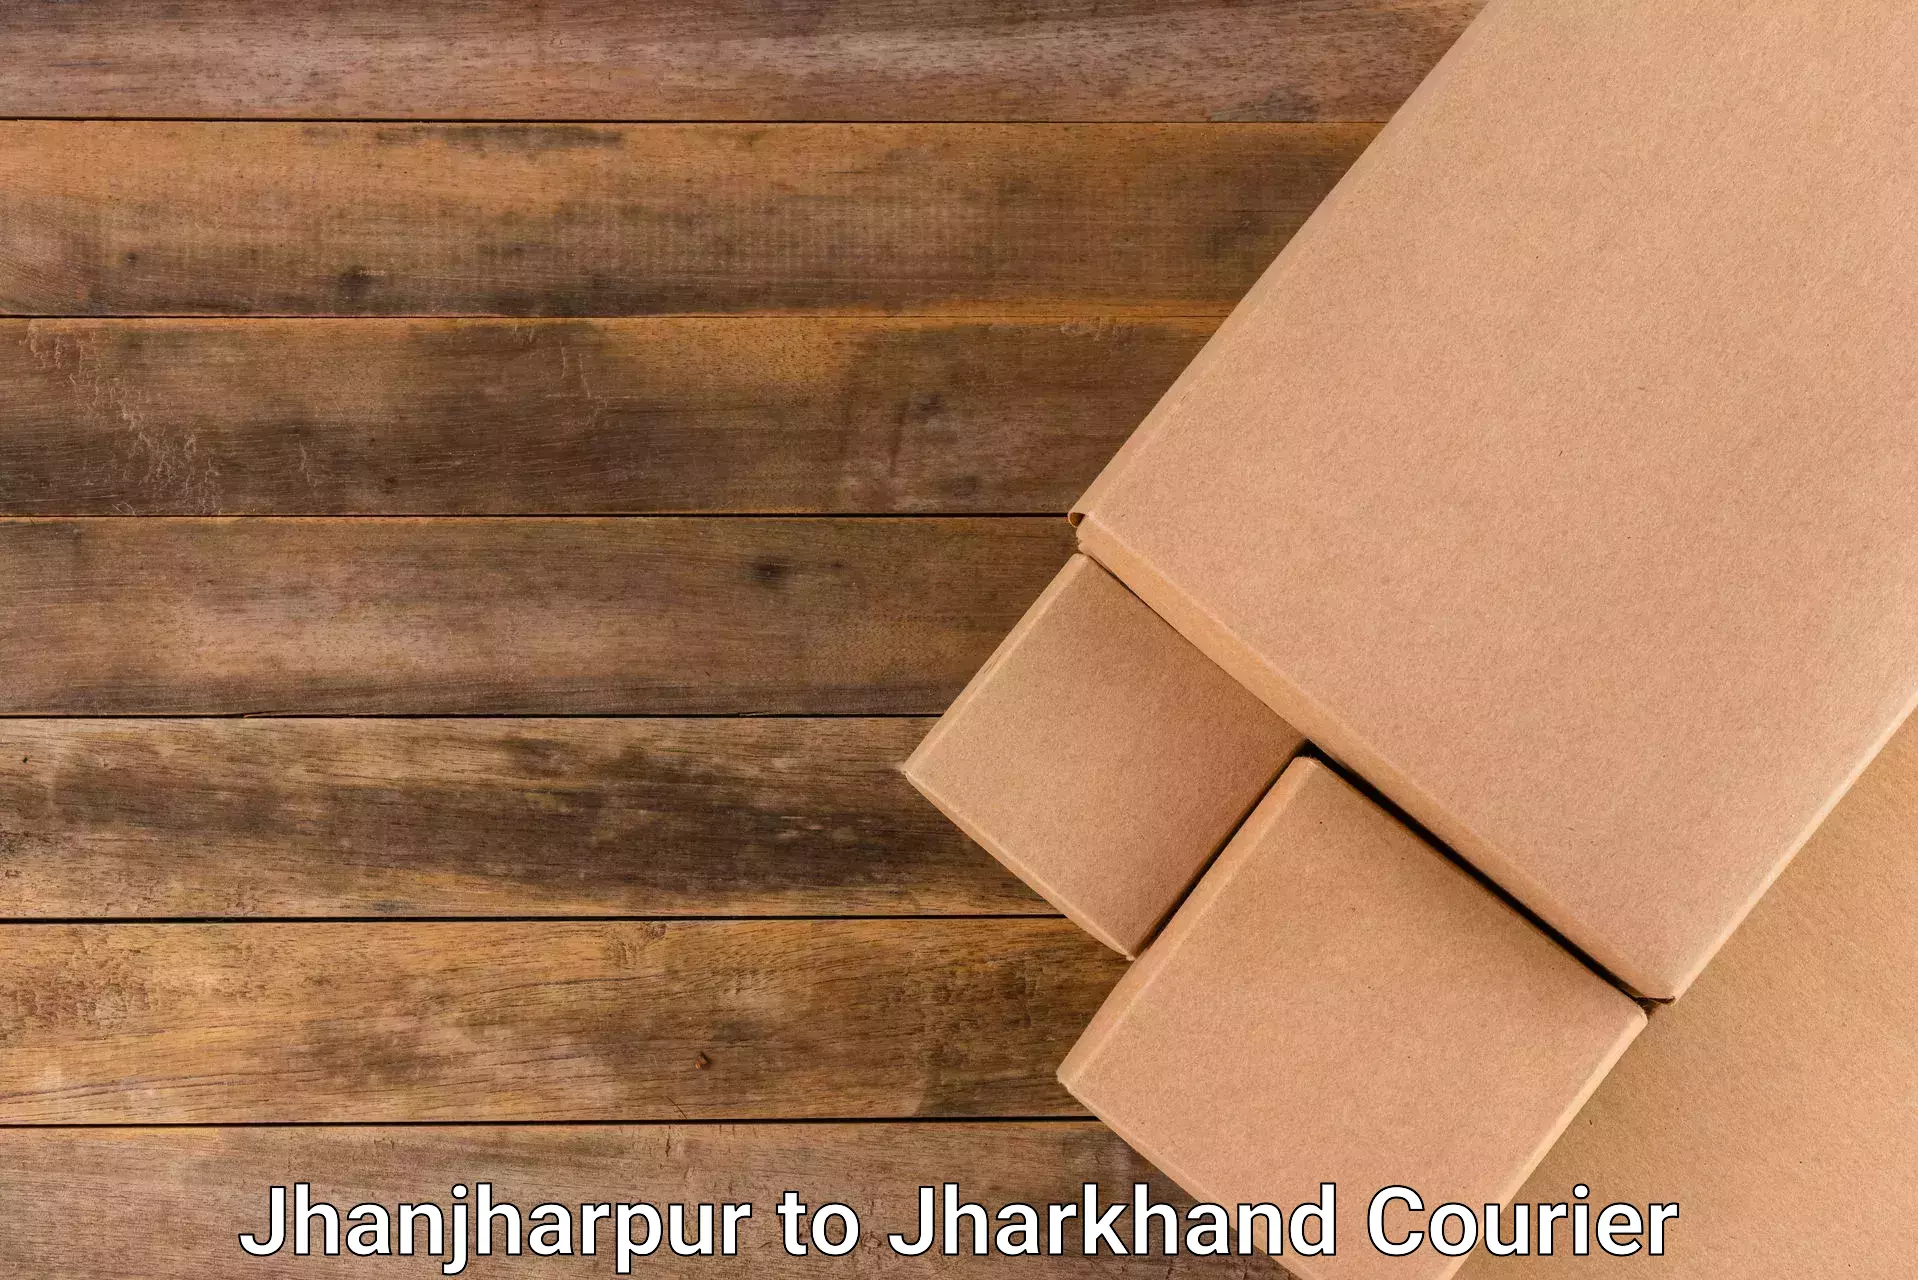 Ocean freight courier Jhanjharpur to Chhatarpur Palamu